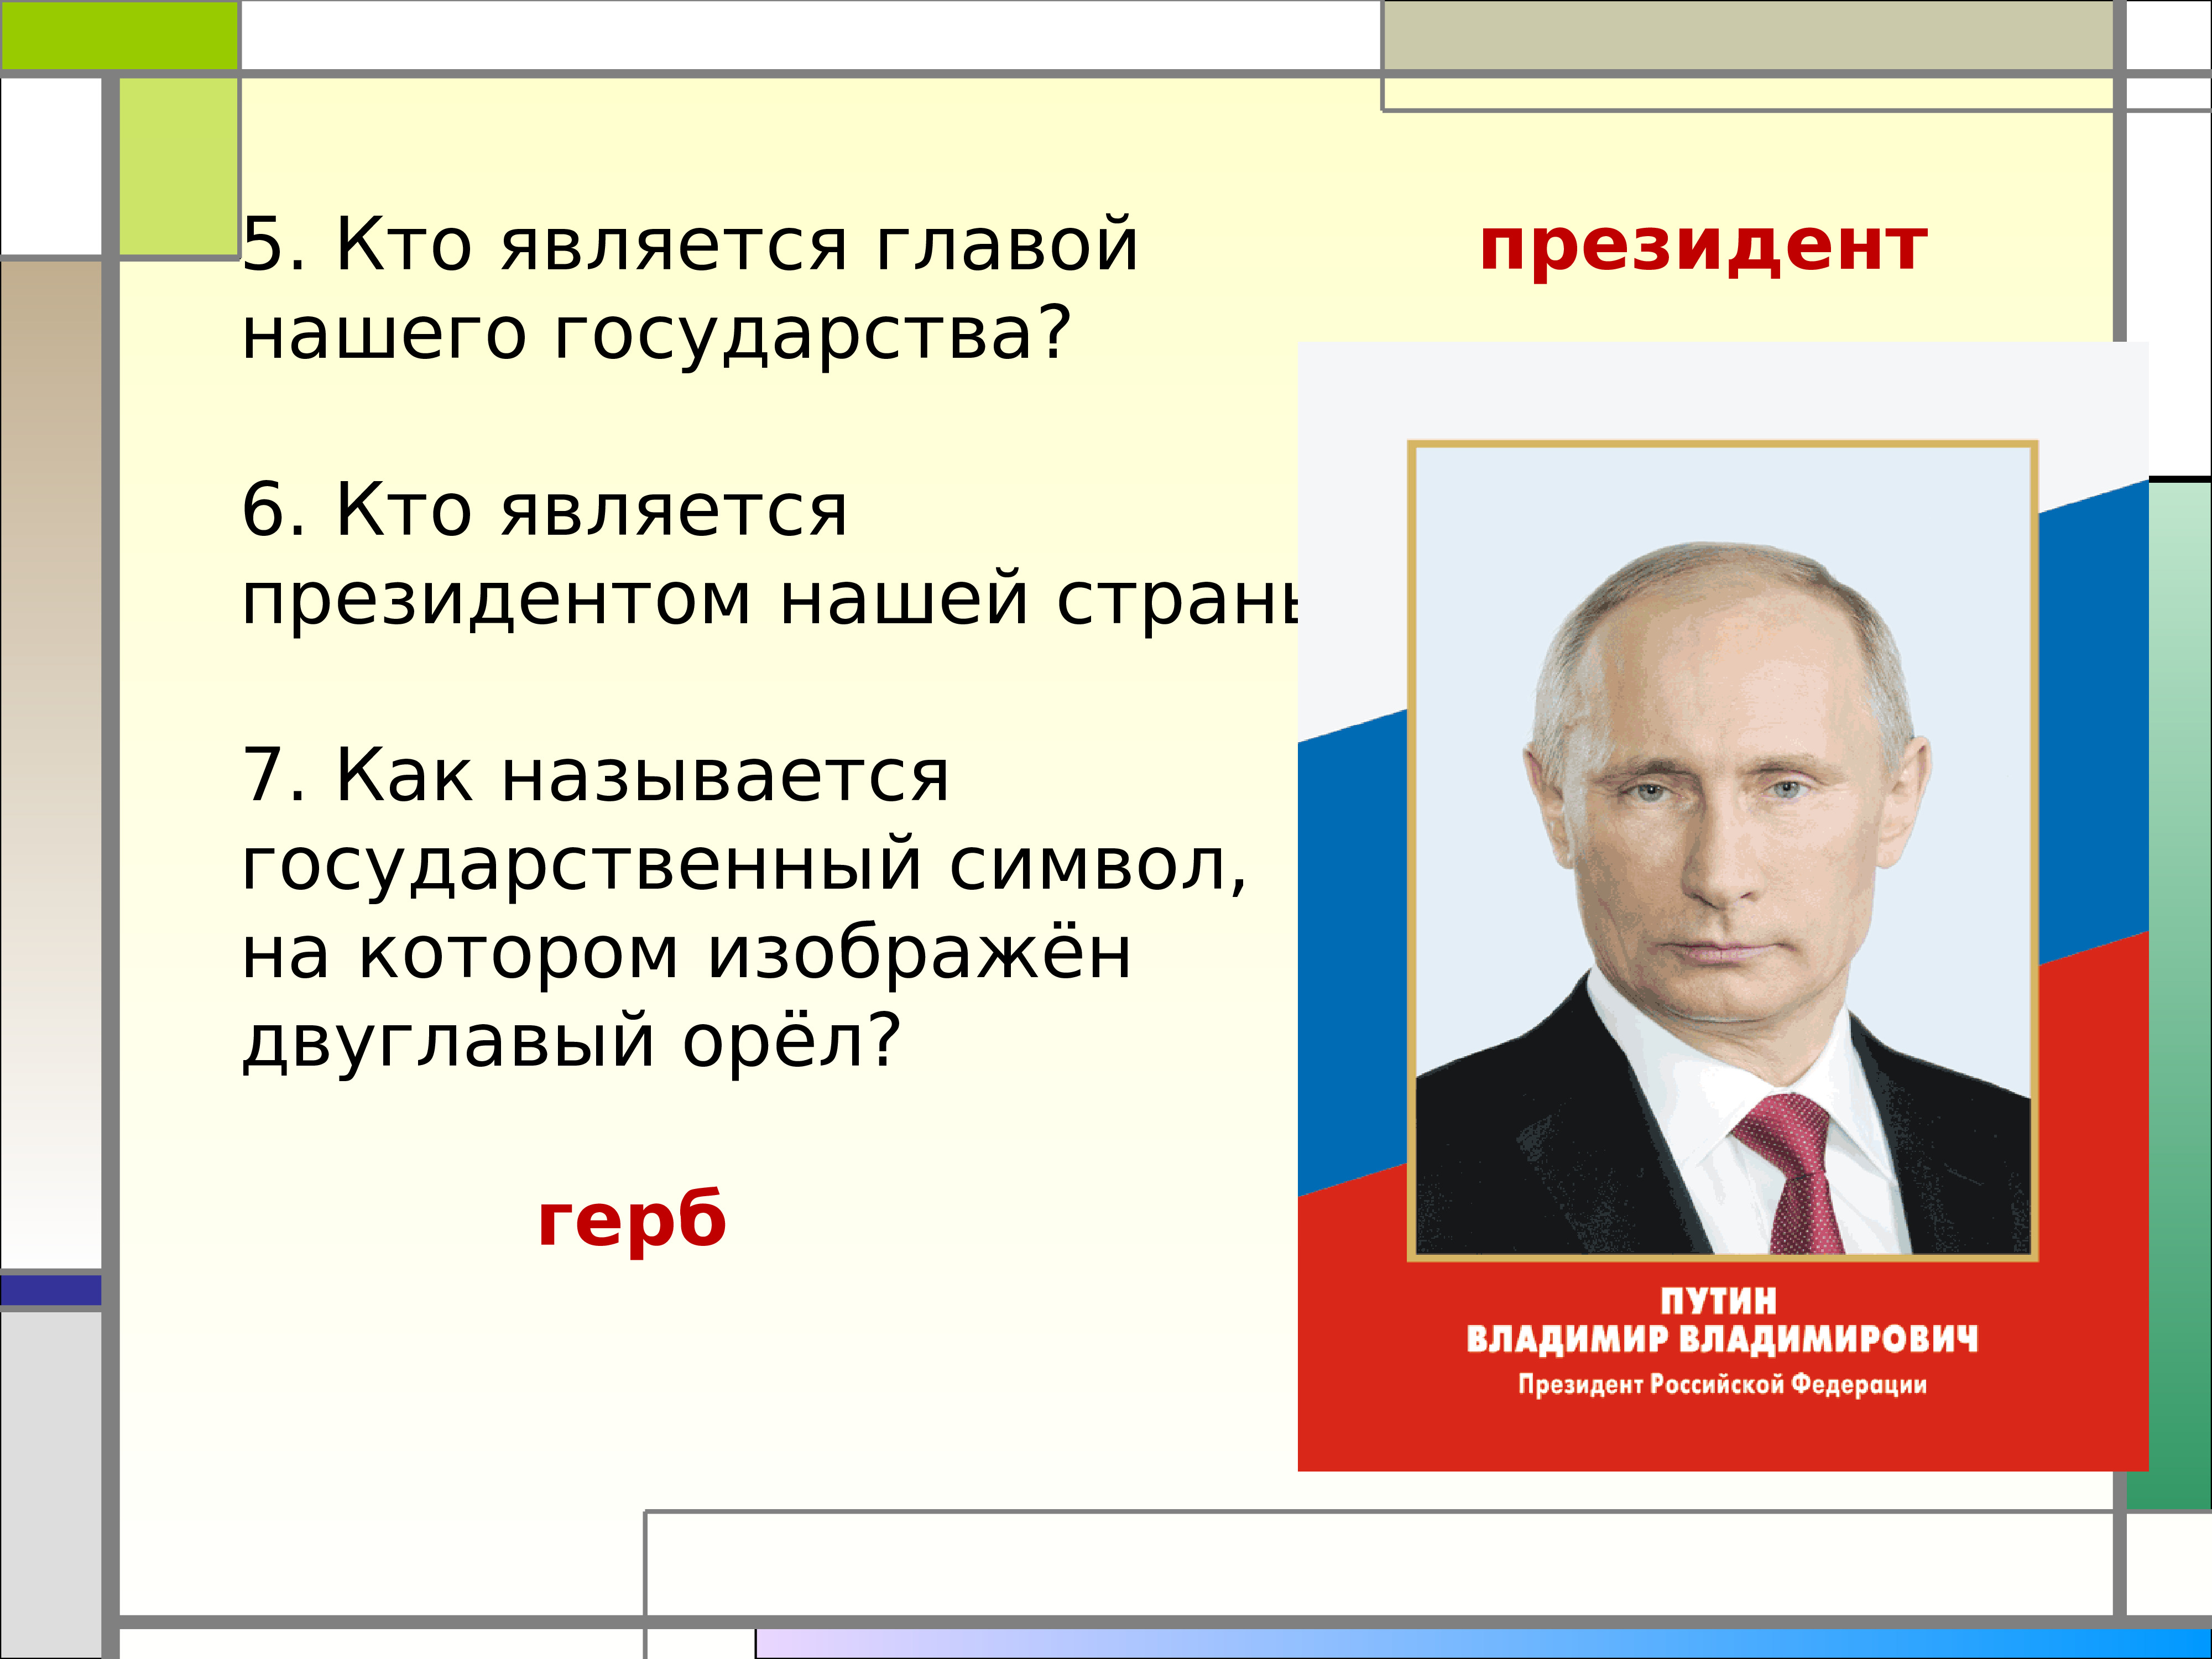 Кто является главой россии. Кто является президентом нашей страны. Главой нашего государства является. Гла нашего государства. Кто является главой нашей страны.